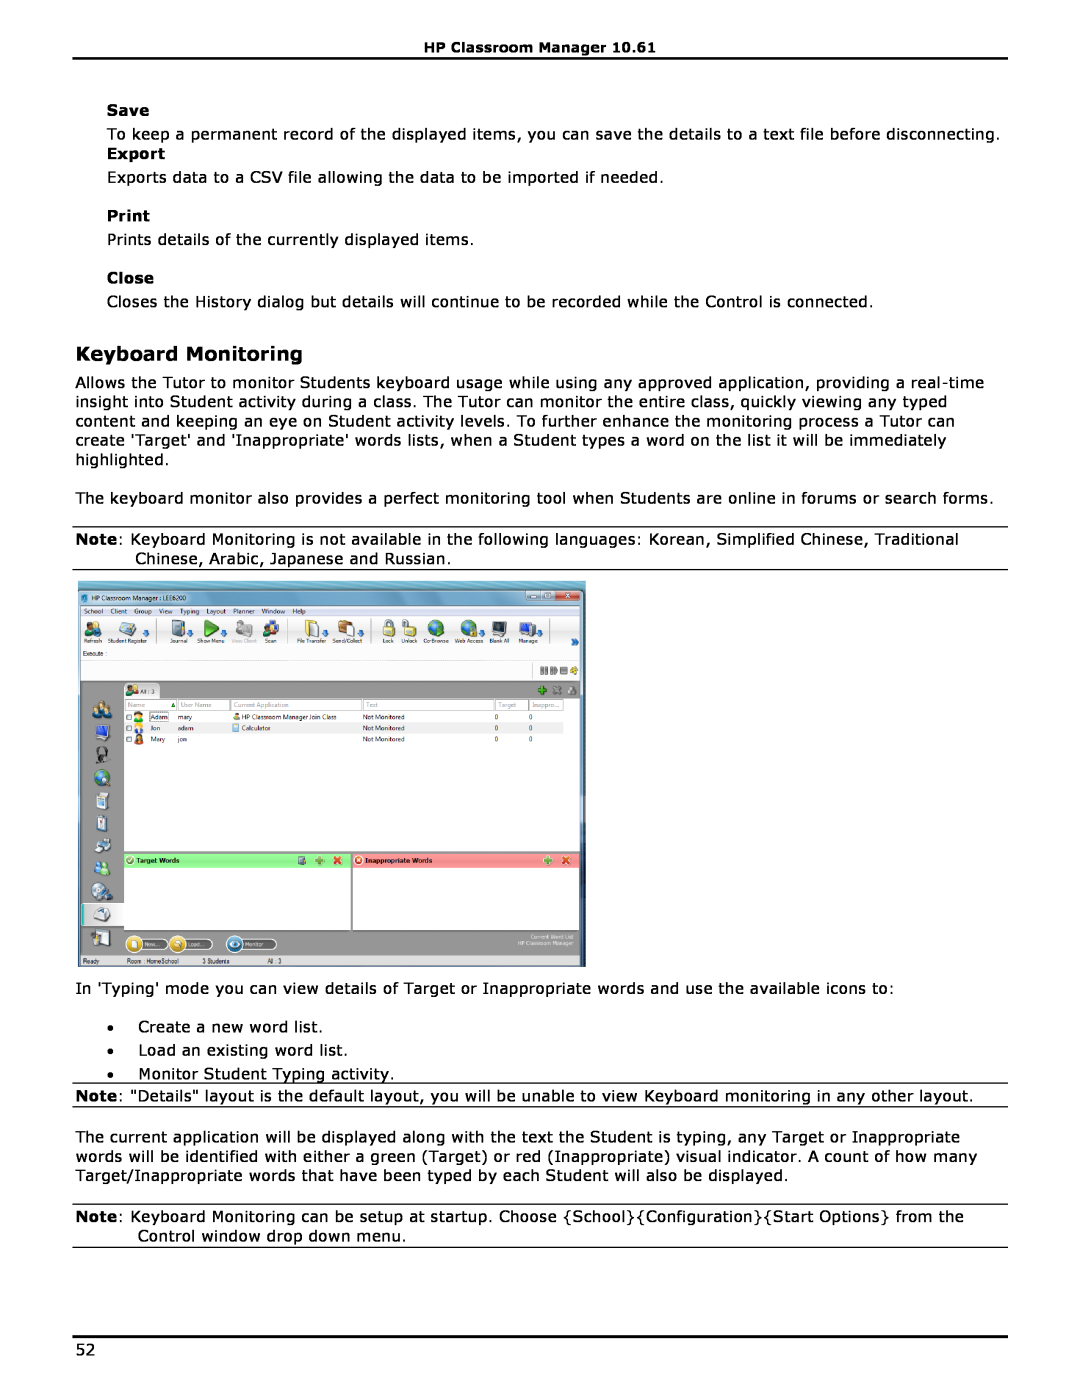 HP Classroom Manager manual Keyboard Monitoring, Save, Export, Print, Close 